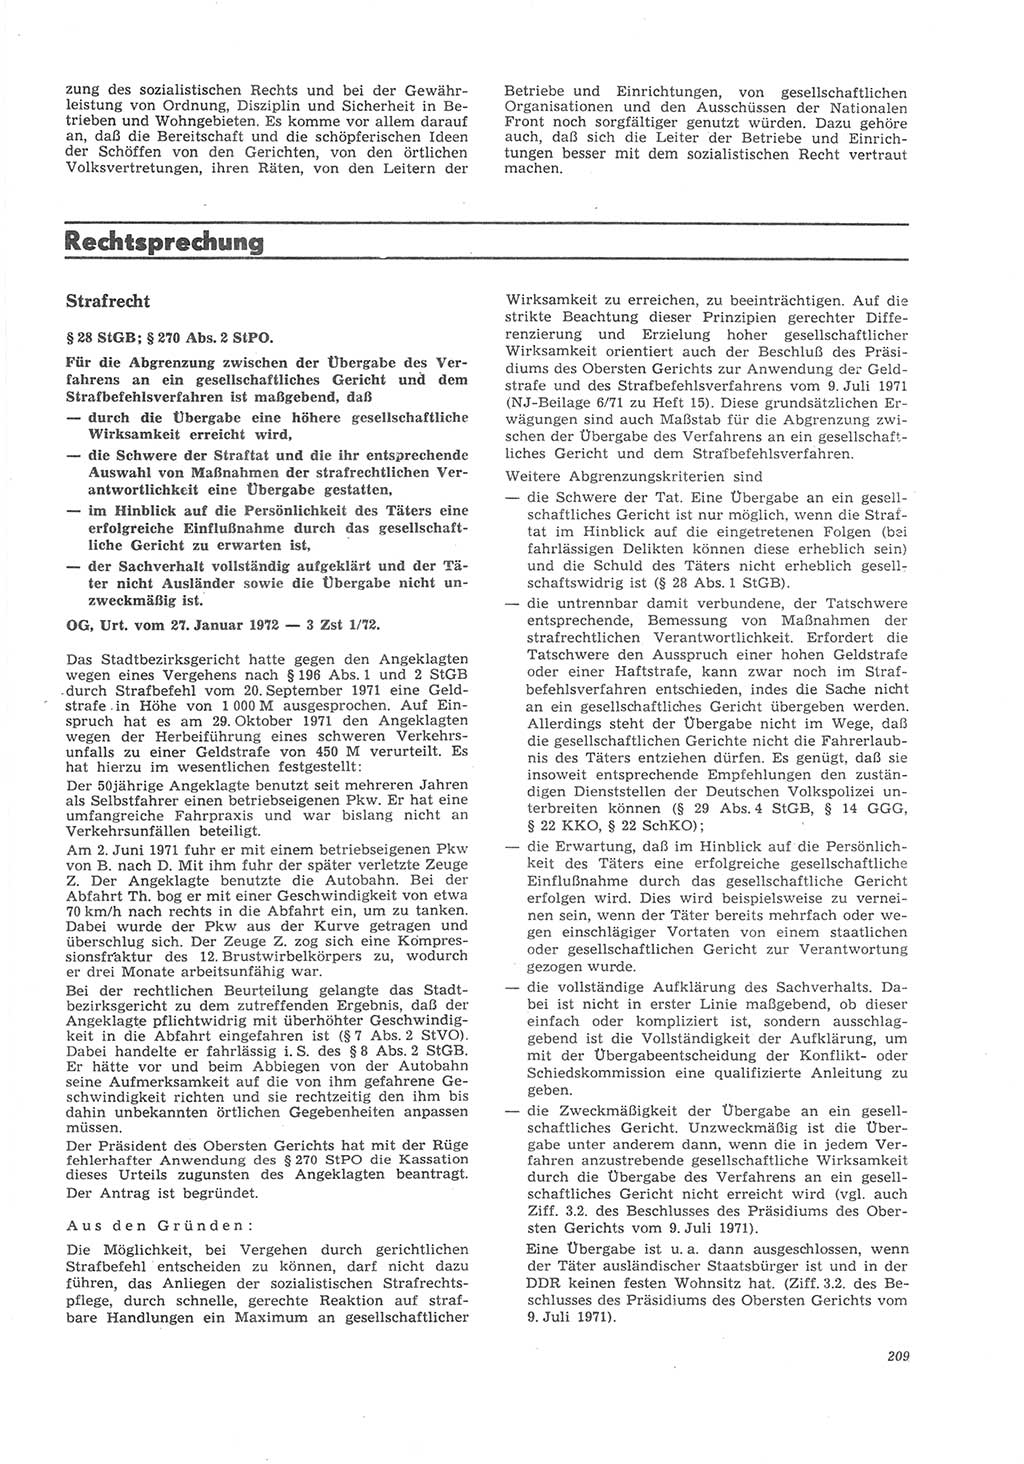 Neue Justiz (NJ), Zeitschrift für Recht und Rechtswissenschaft [Deutsche Demokratische Republik (DDR)], 26. Jahrgang 1972, Seite 209 (NJ DDR 1972, S. 209)